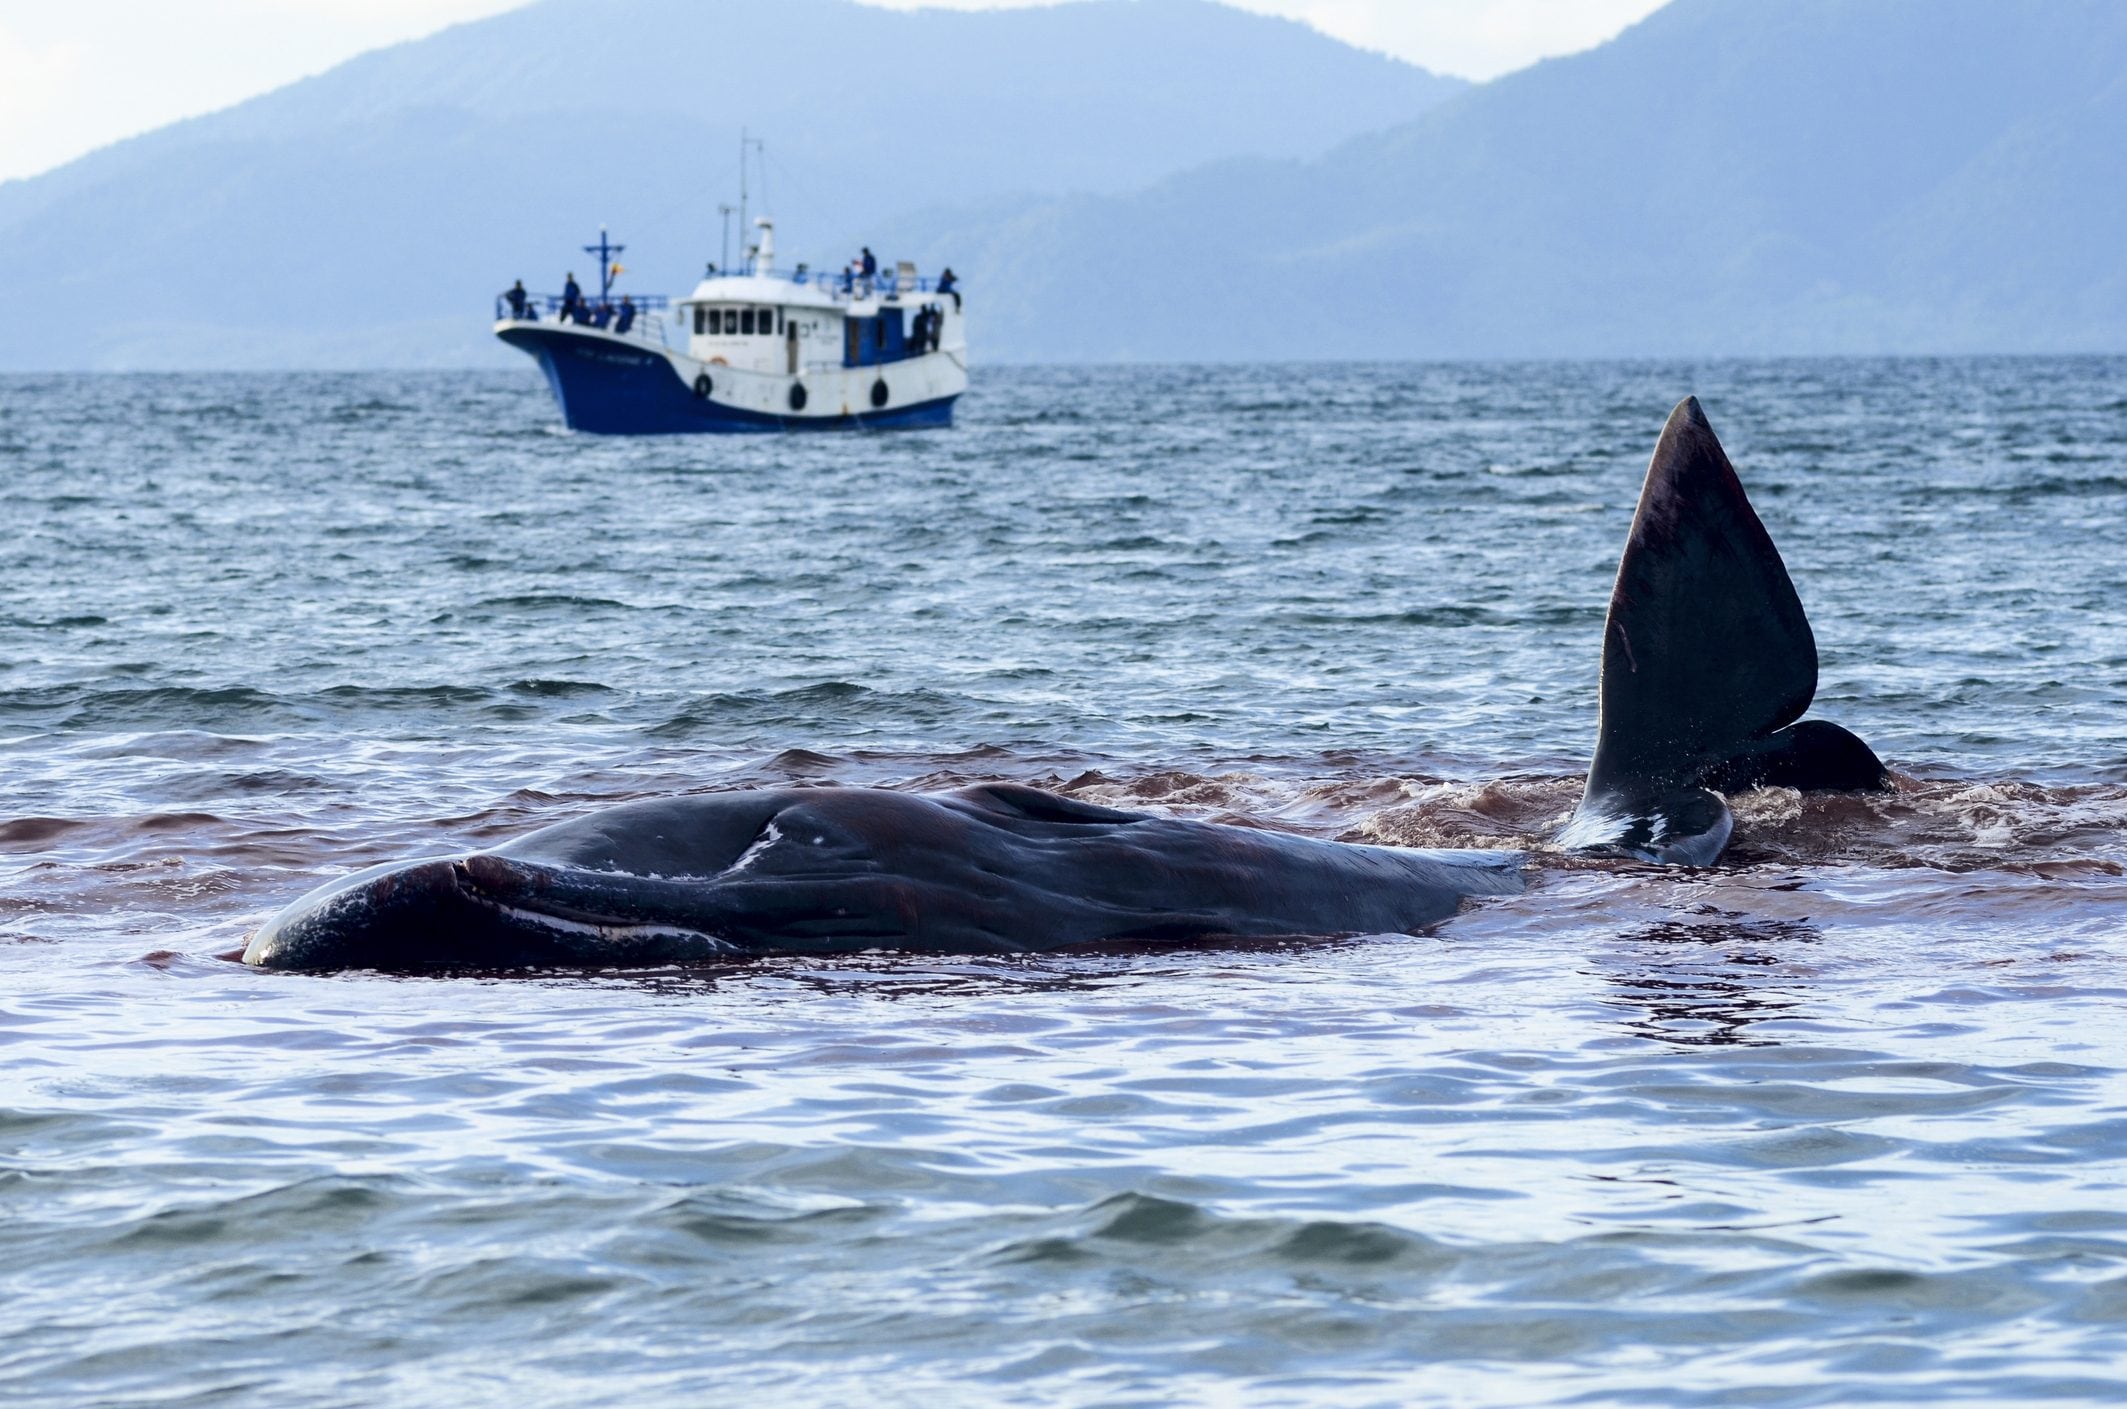 Scopri di più sull'articolo Isole Faroe e la mattanza di balene: la proposta dell’UE per fermare la “Grindadrap”